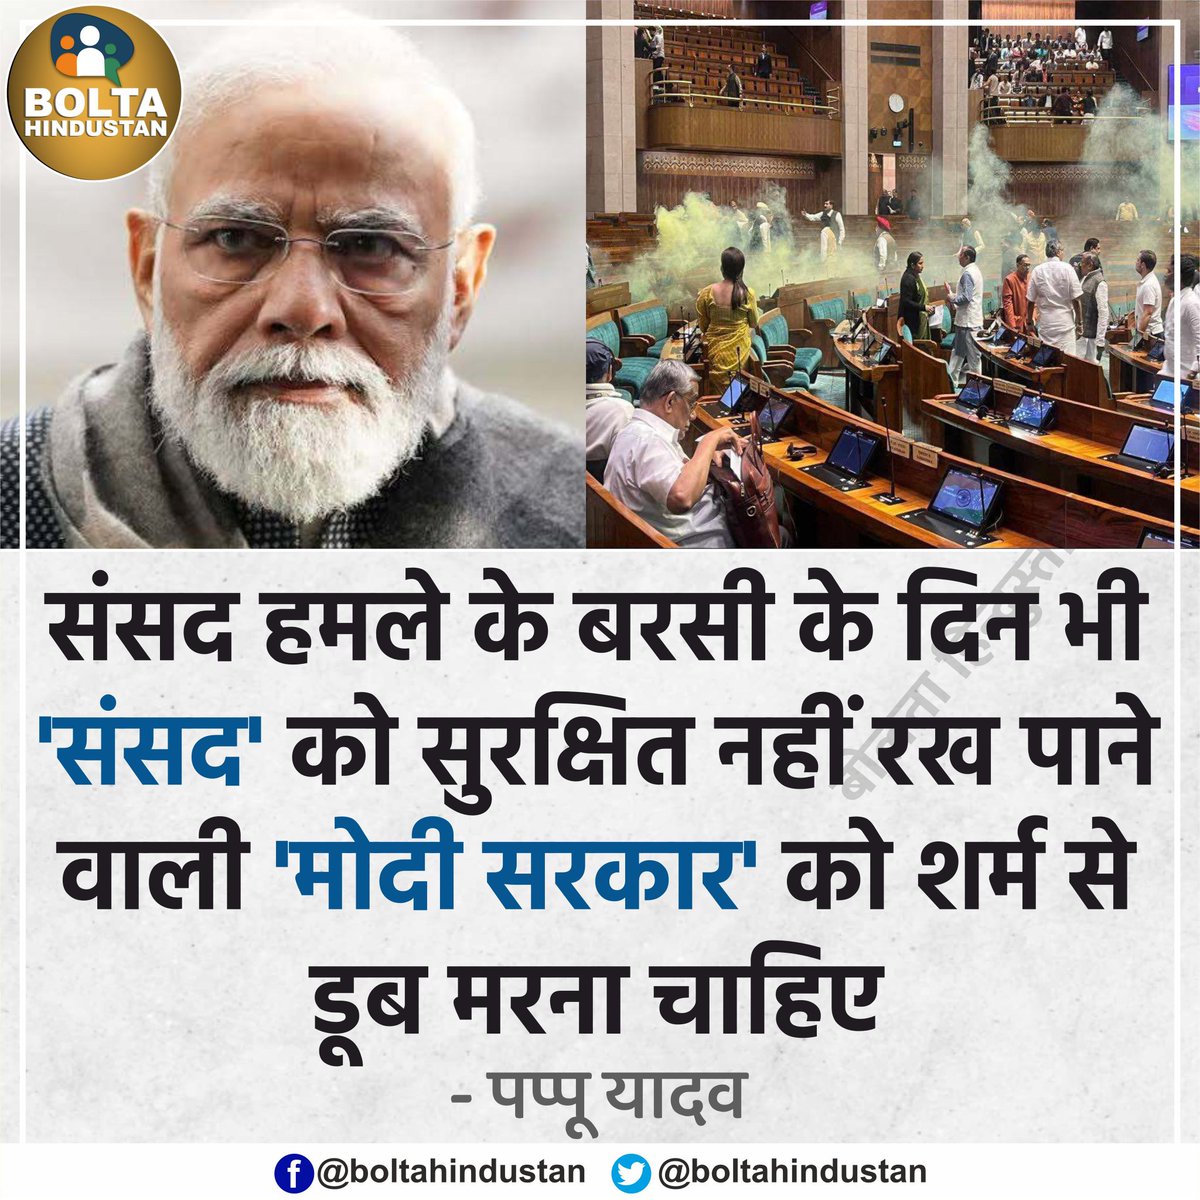 संसद भवन की सुरक्षा नही कर पाए, देश की सीमाओं की सुरक्षा क्या ही कर पाएगी BJ Party की सरकार., शर्मनाक! #ParliamentAttack #BJPFailsIndia